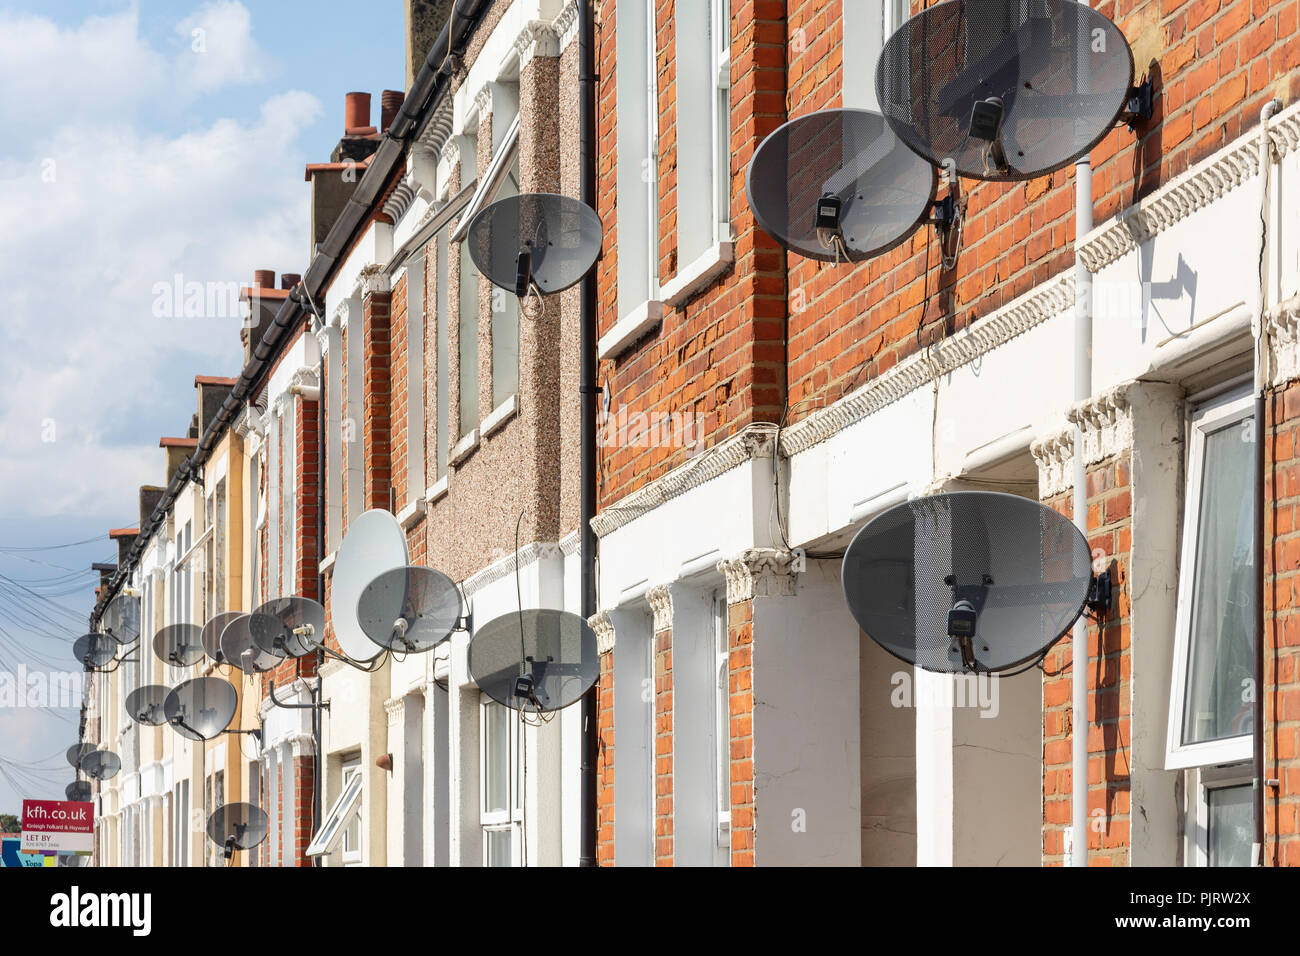 Satellitenschüsseln an der Vorderseite der Reihenhäuser, Cilbey Straße, Tooting, Londoner Stadtteil Wandsworth, Greater London, England, Vereinigtes Königreich Stockfoto